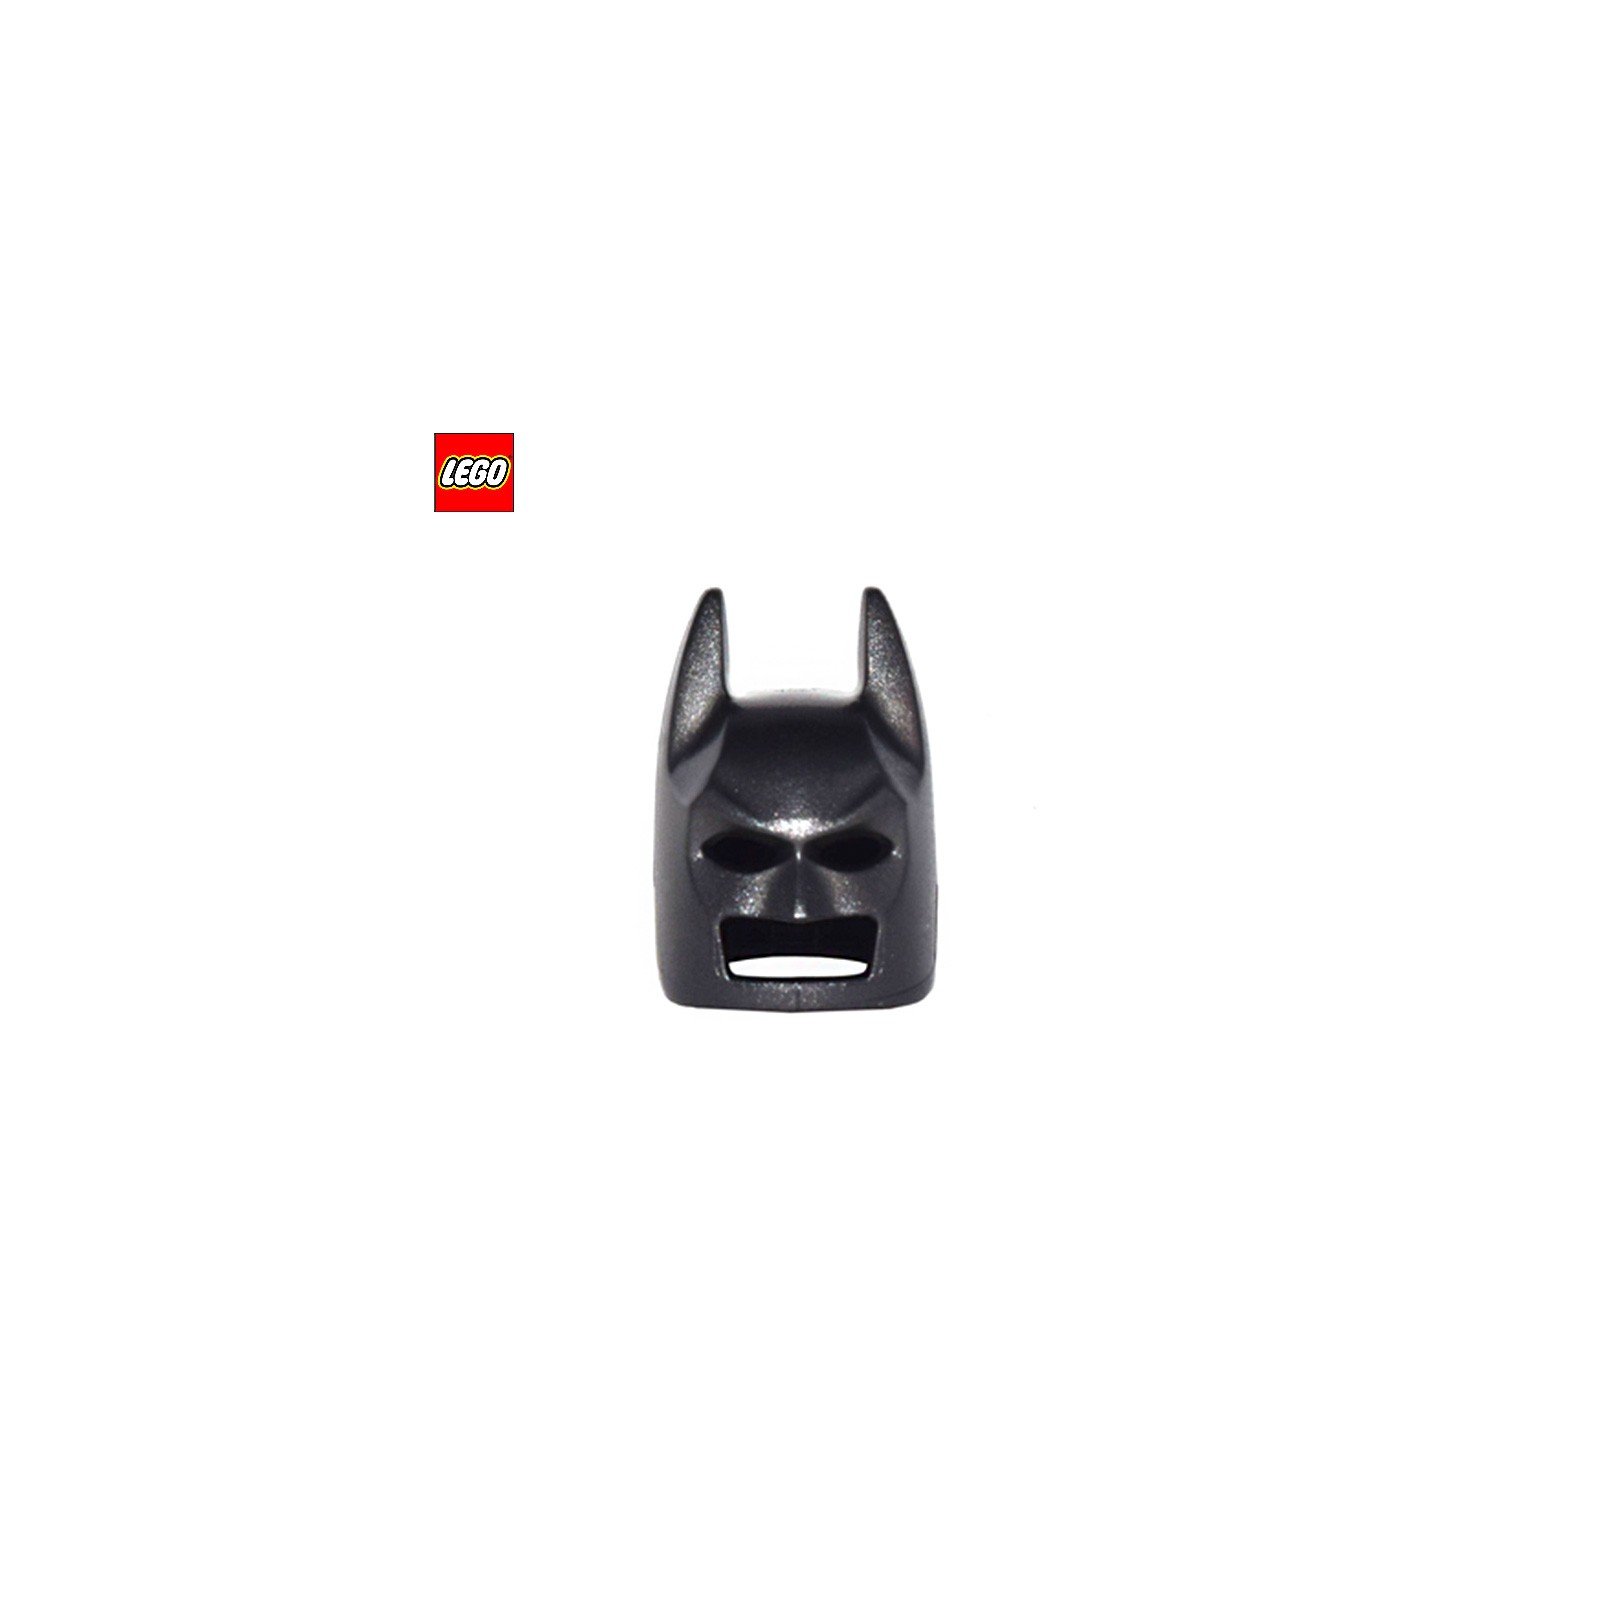 Casque / Masque de Batman - Pièce LEGO® 10113 - Super Briques